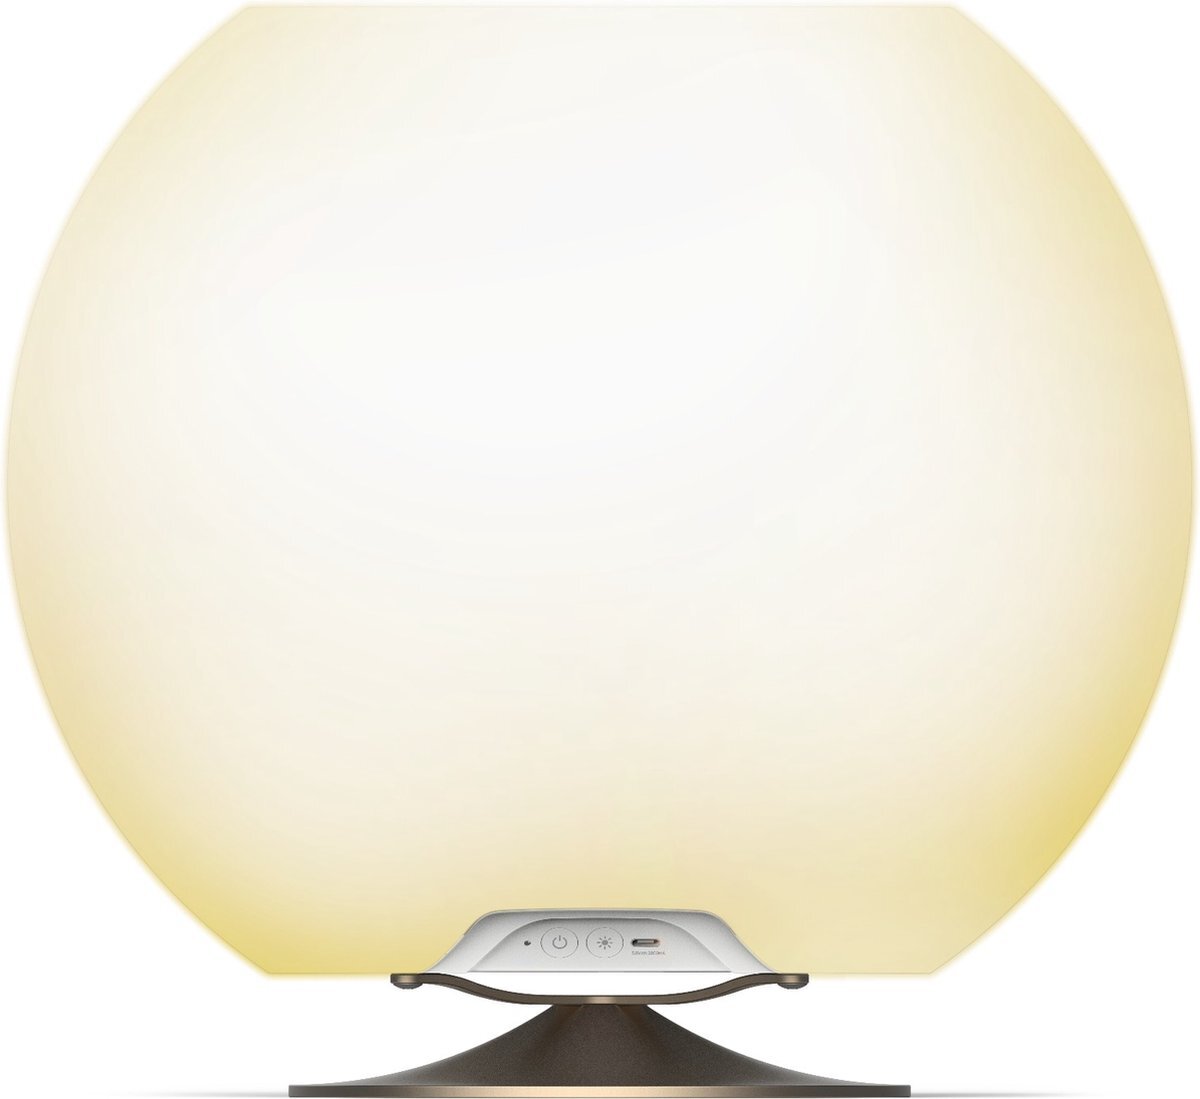 Kooduu Sphere Brass - Draagbare Bluetooth Luidspreker, Dimbare LED Lamp en Wijnkoeler - Muziek en licht voor binnen en buiten: feestjes, diners, verjaardagen, etc.